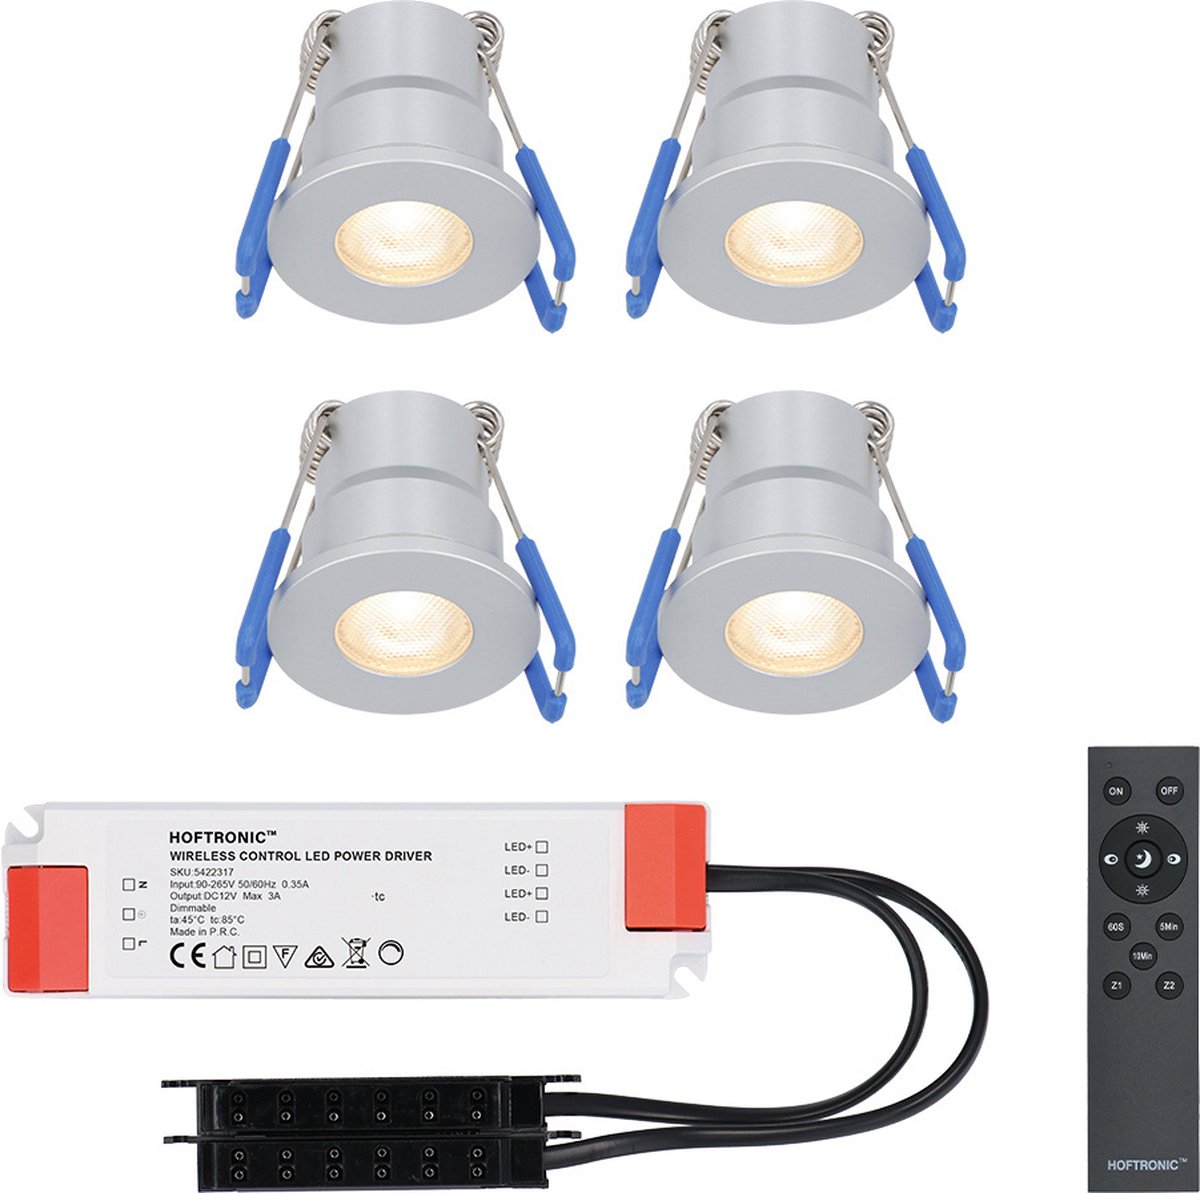 Milano - 4x inbouwspots veranda – Dimbaar LED - Complete set met afstandsbediening – Plug & Play - 12 Volt 3 watt - 2700K 200 lumen - IP65 waterdicht - RVS